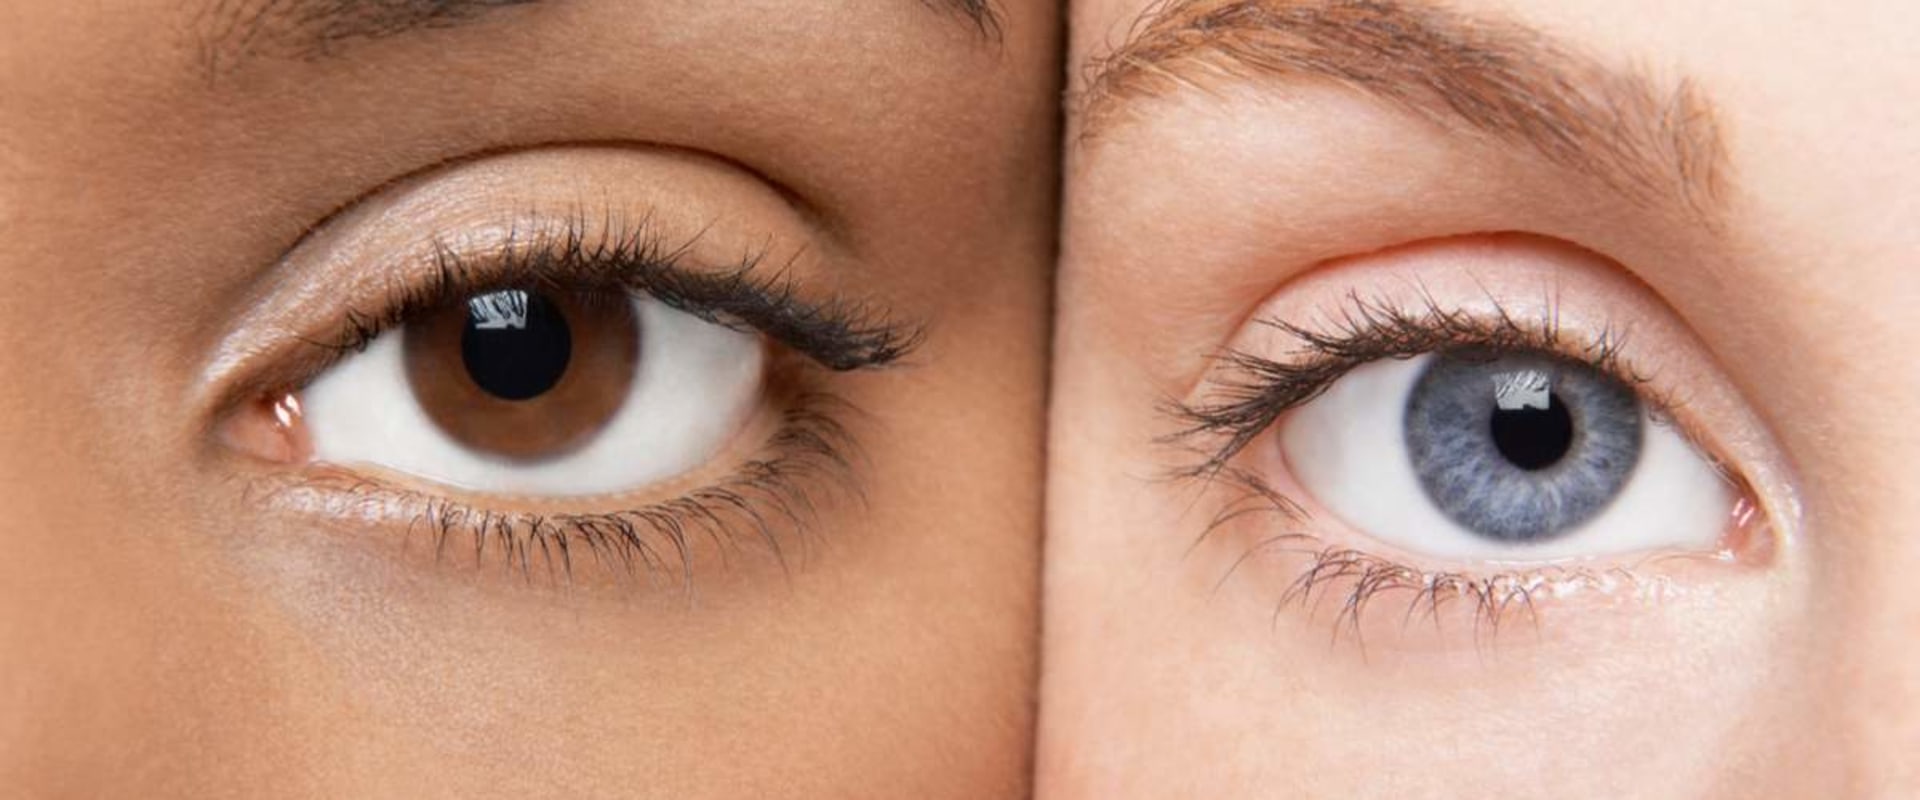 Cómo saber si tus ojos ya no toleran lentes de contacto?